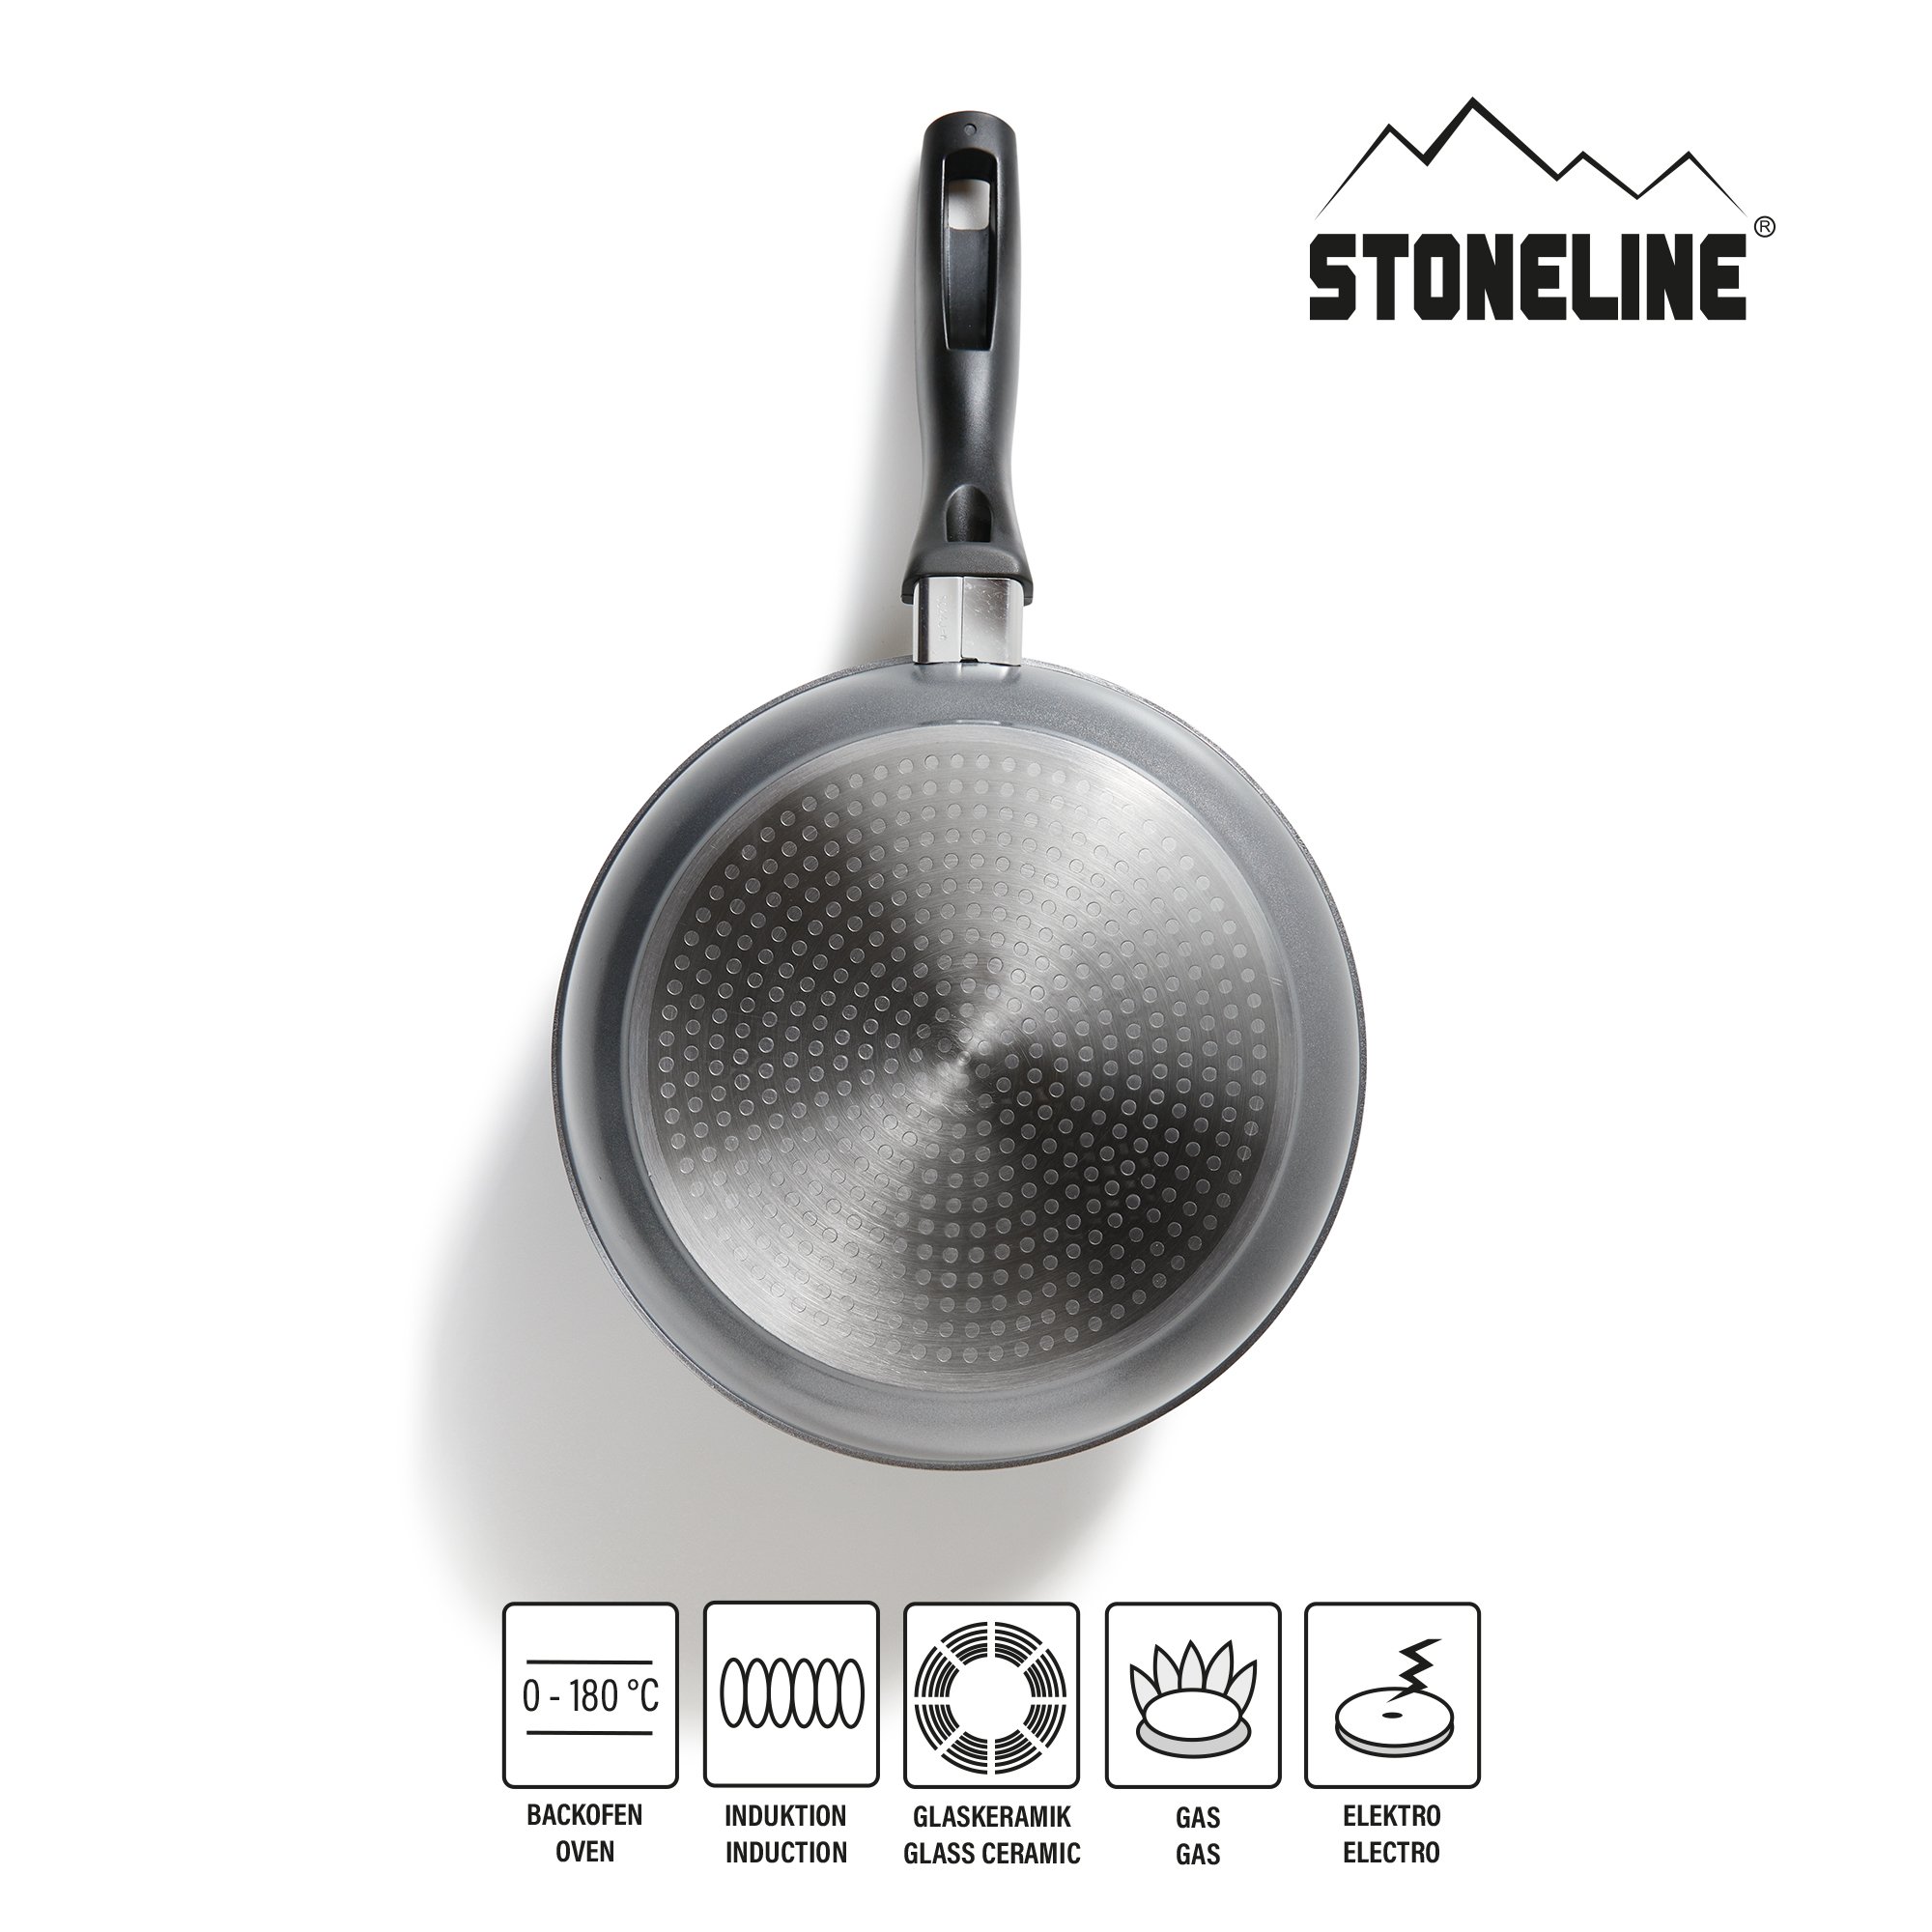 STONELINE® Kochgeschirr-Set 5-teilig mit Deckeln, beschichtete Töpfe & Pfannen Induktion geeignet